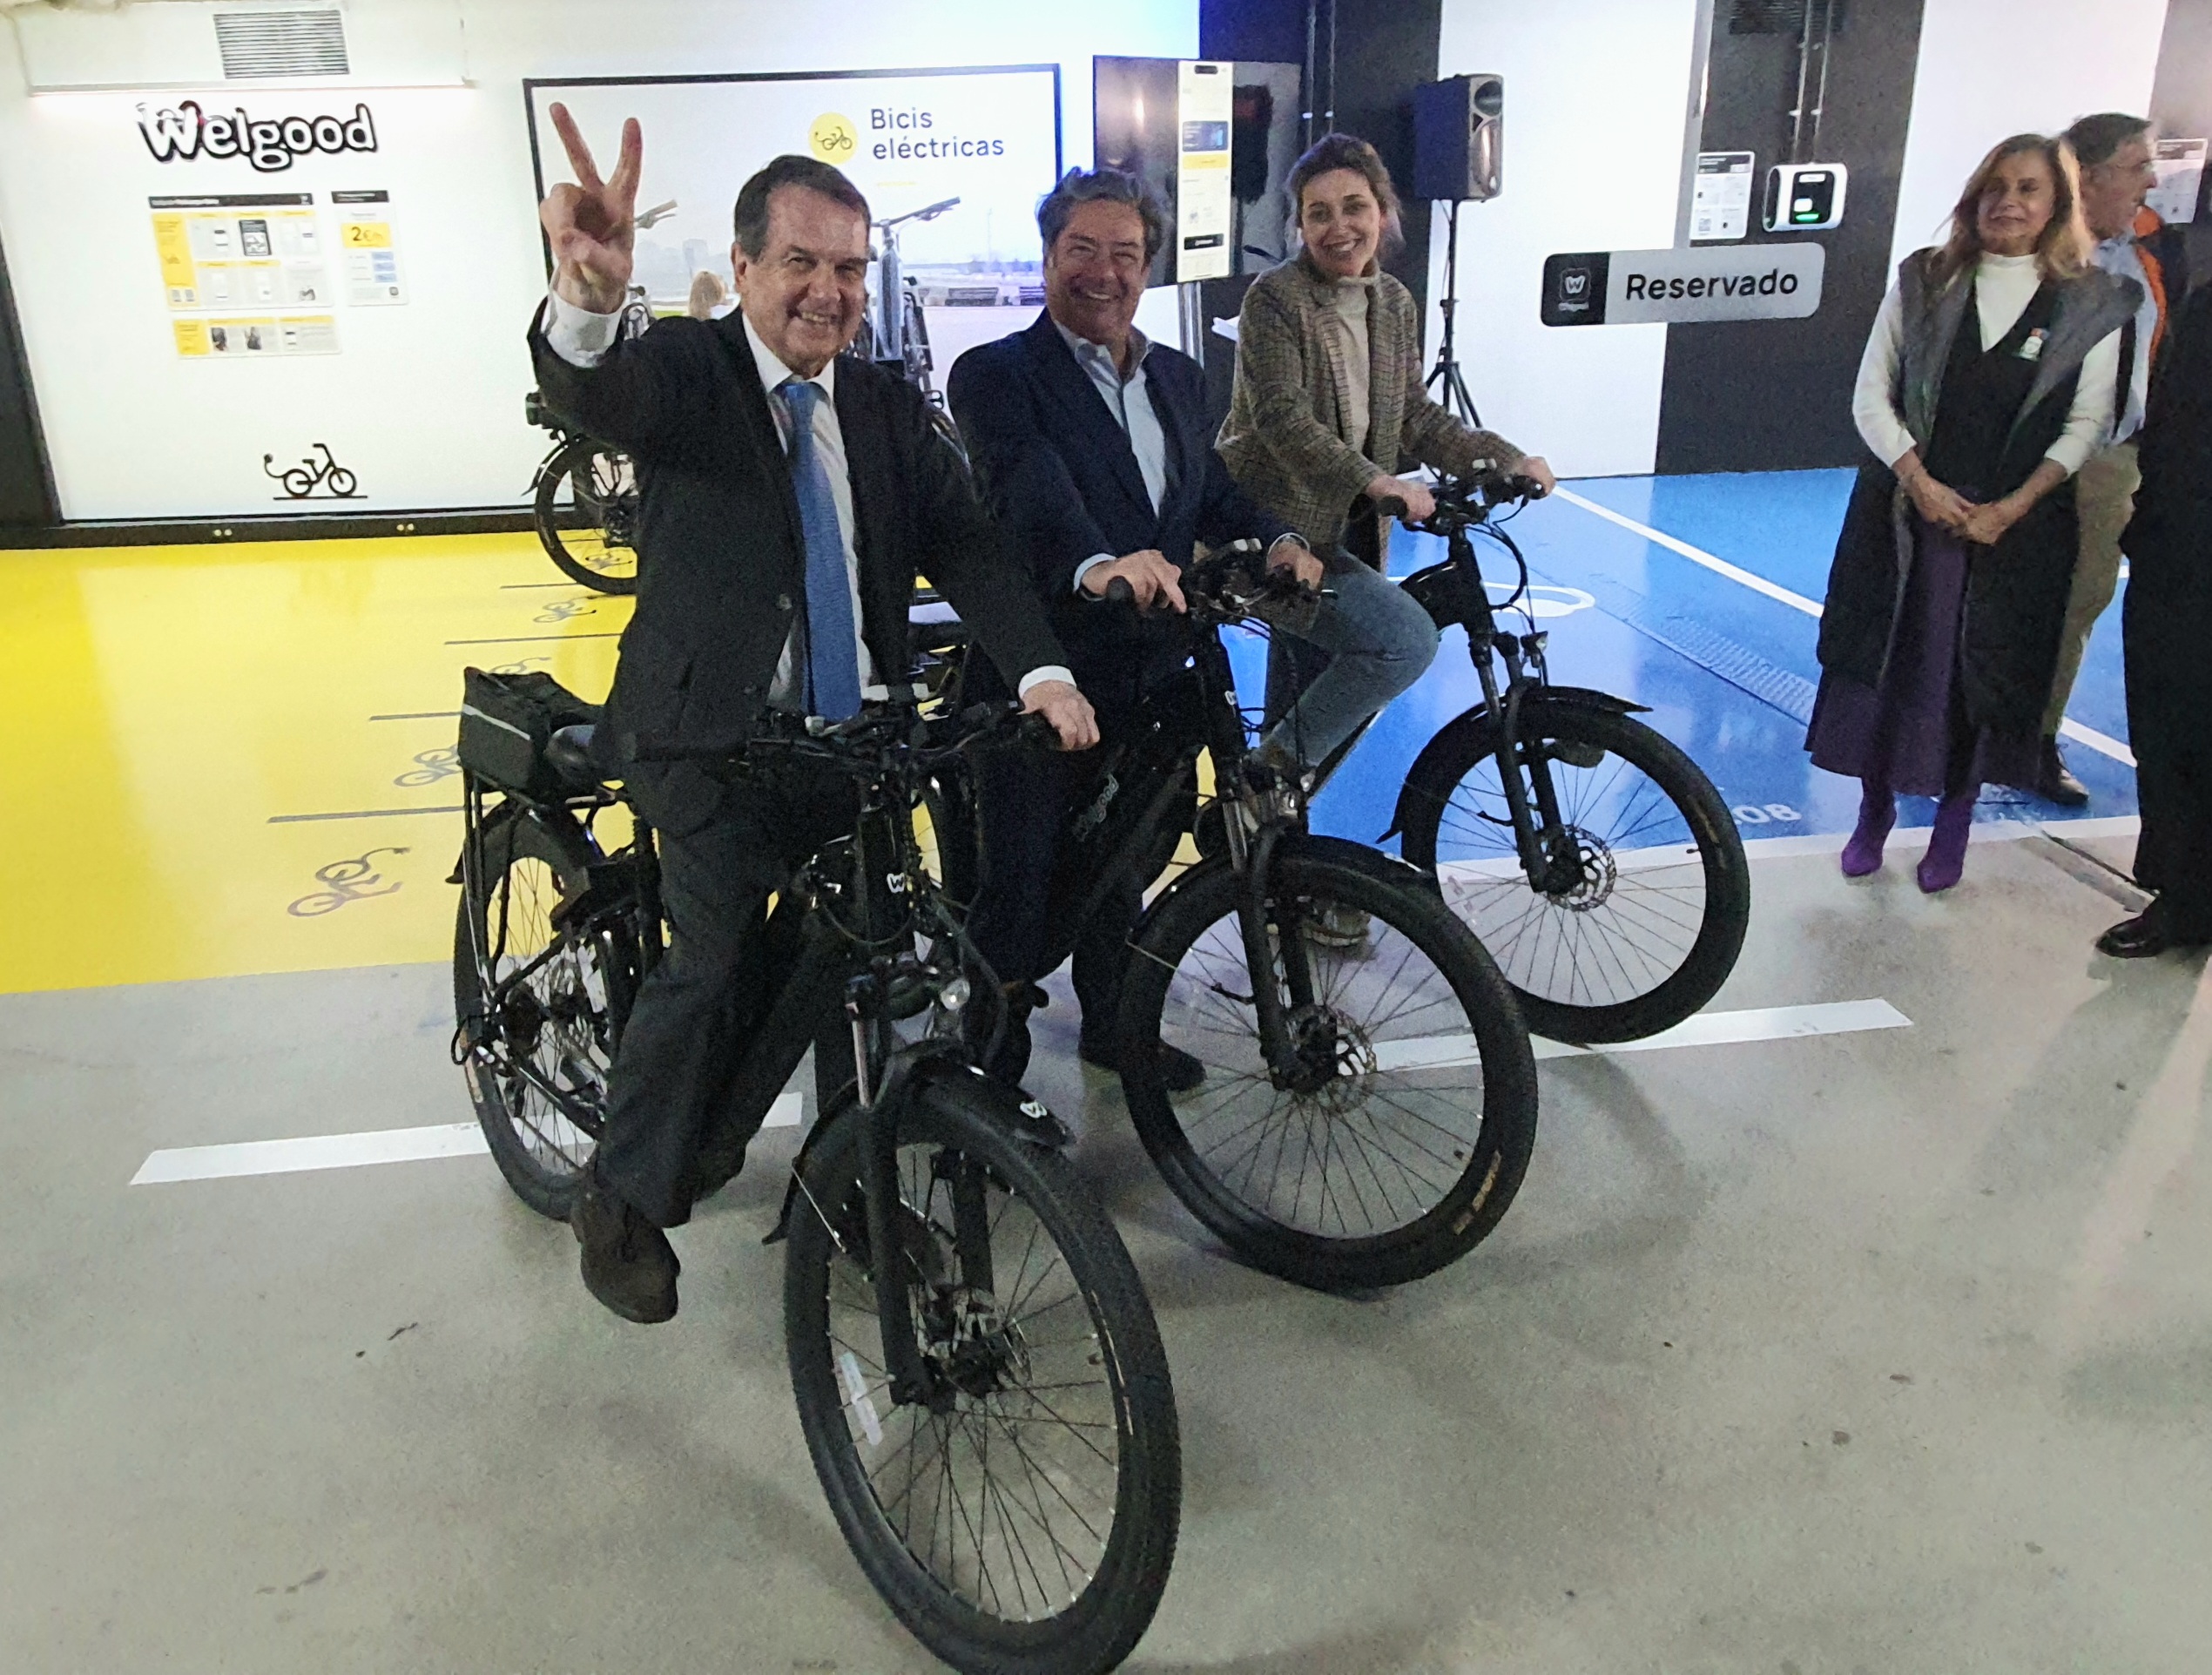 Vigo ya dispone de bicicletas de alquiler: 2€ la hora y disponibles en parkings subterráneos